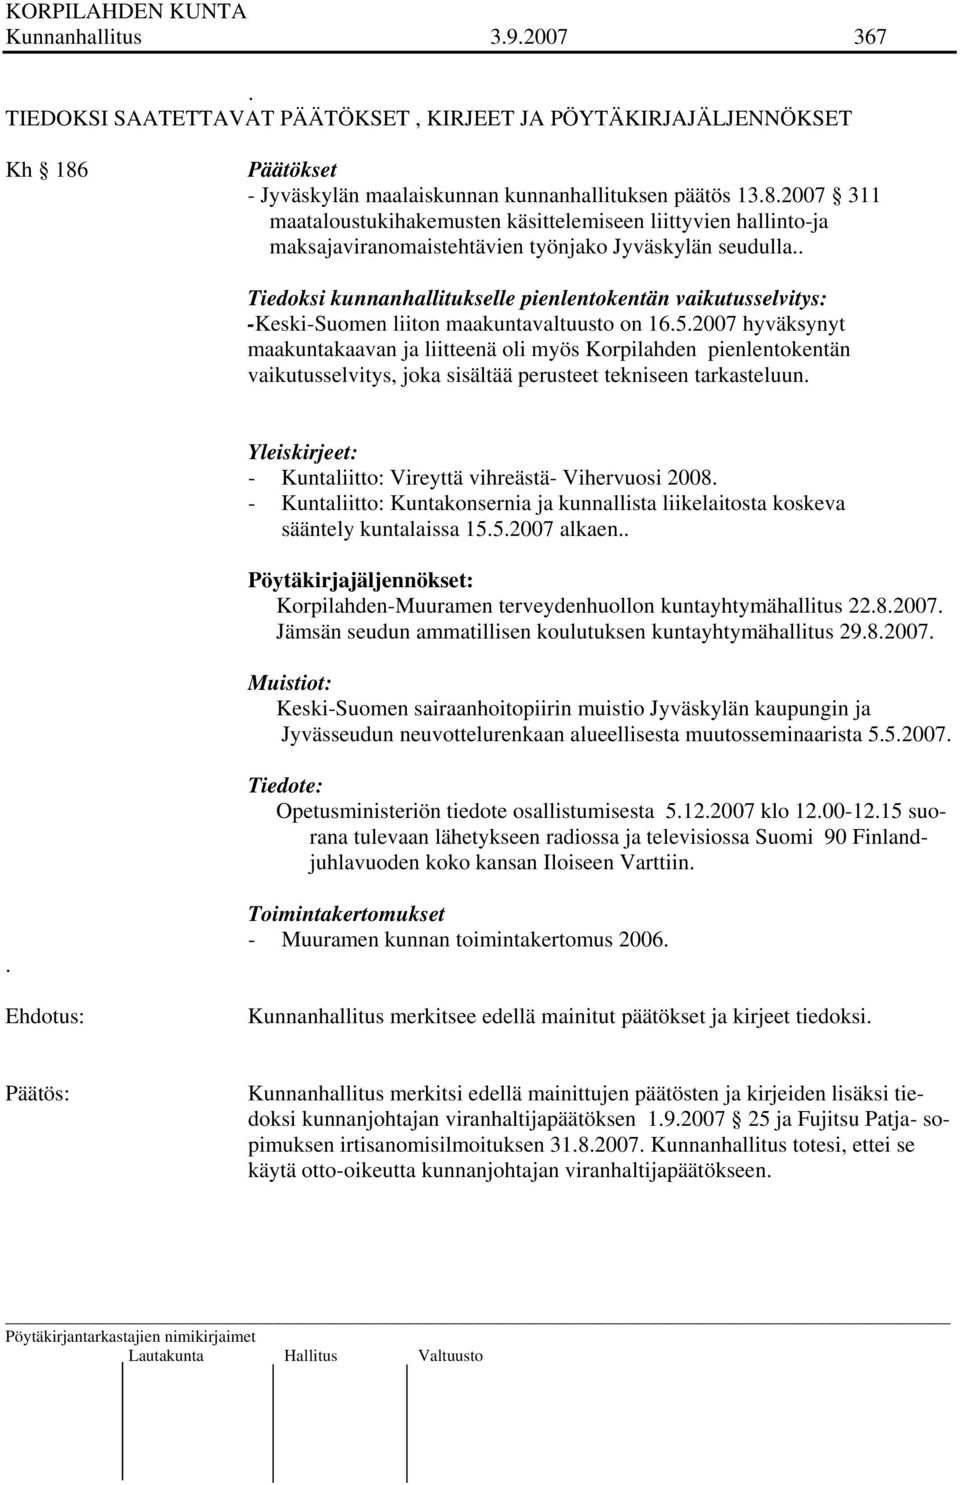 . Tiedoksi kunnanhallitukselle pienlentokentän vaikutusselvitys: -Keski-Suomen liiton maakuntavaltuusto on 16.5.